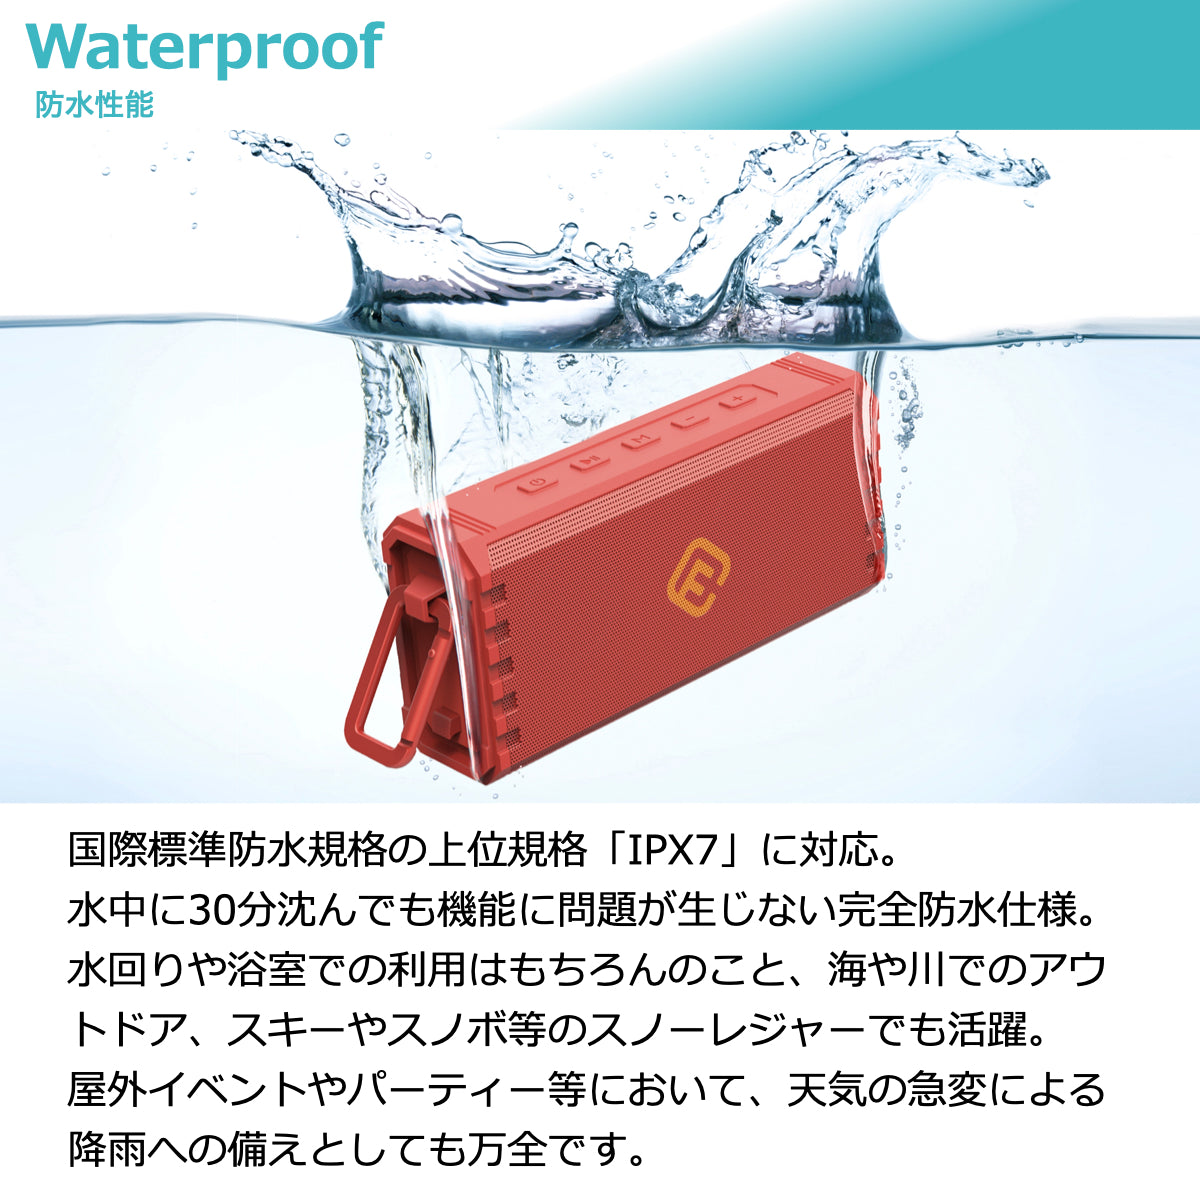 公式直販】40s Bluetoothスピーカー HW2 防水 ワイヤレス 高音質 大